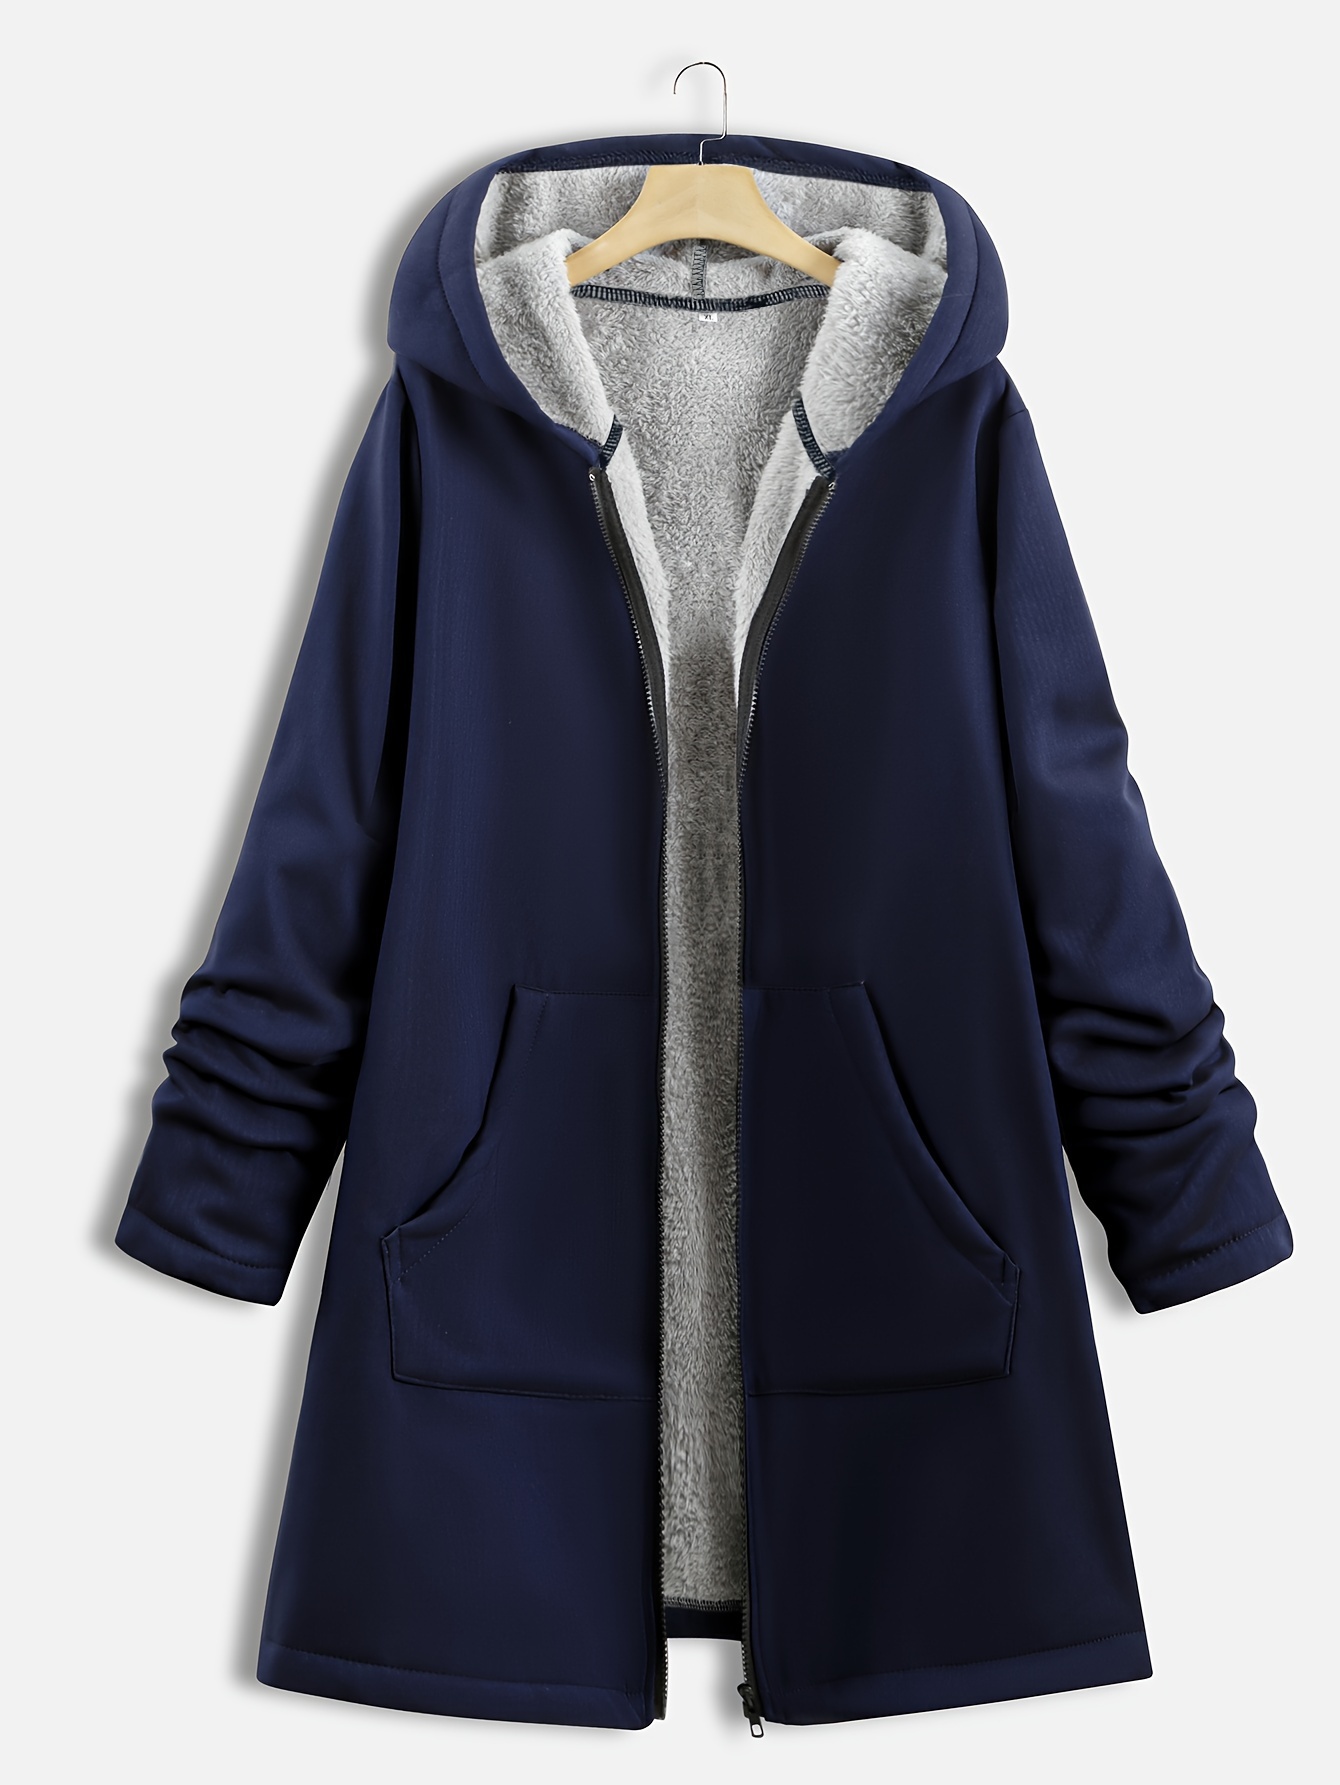 Plus Size Winter Coats, Womens Plus Size Winter Coats Online